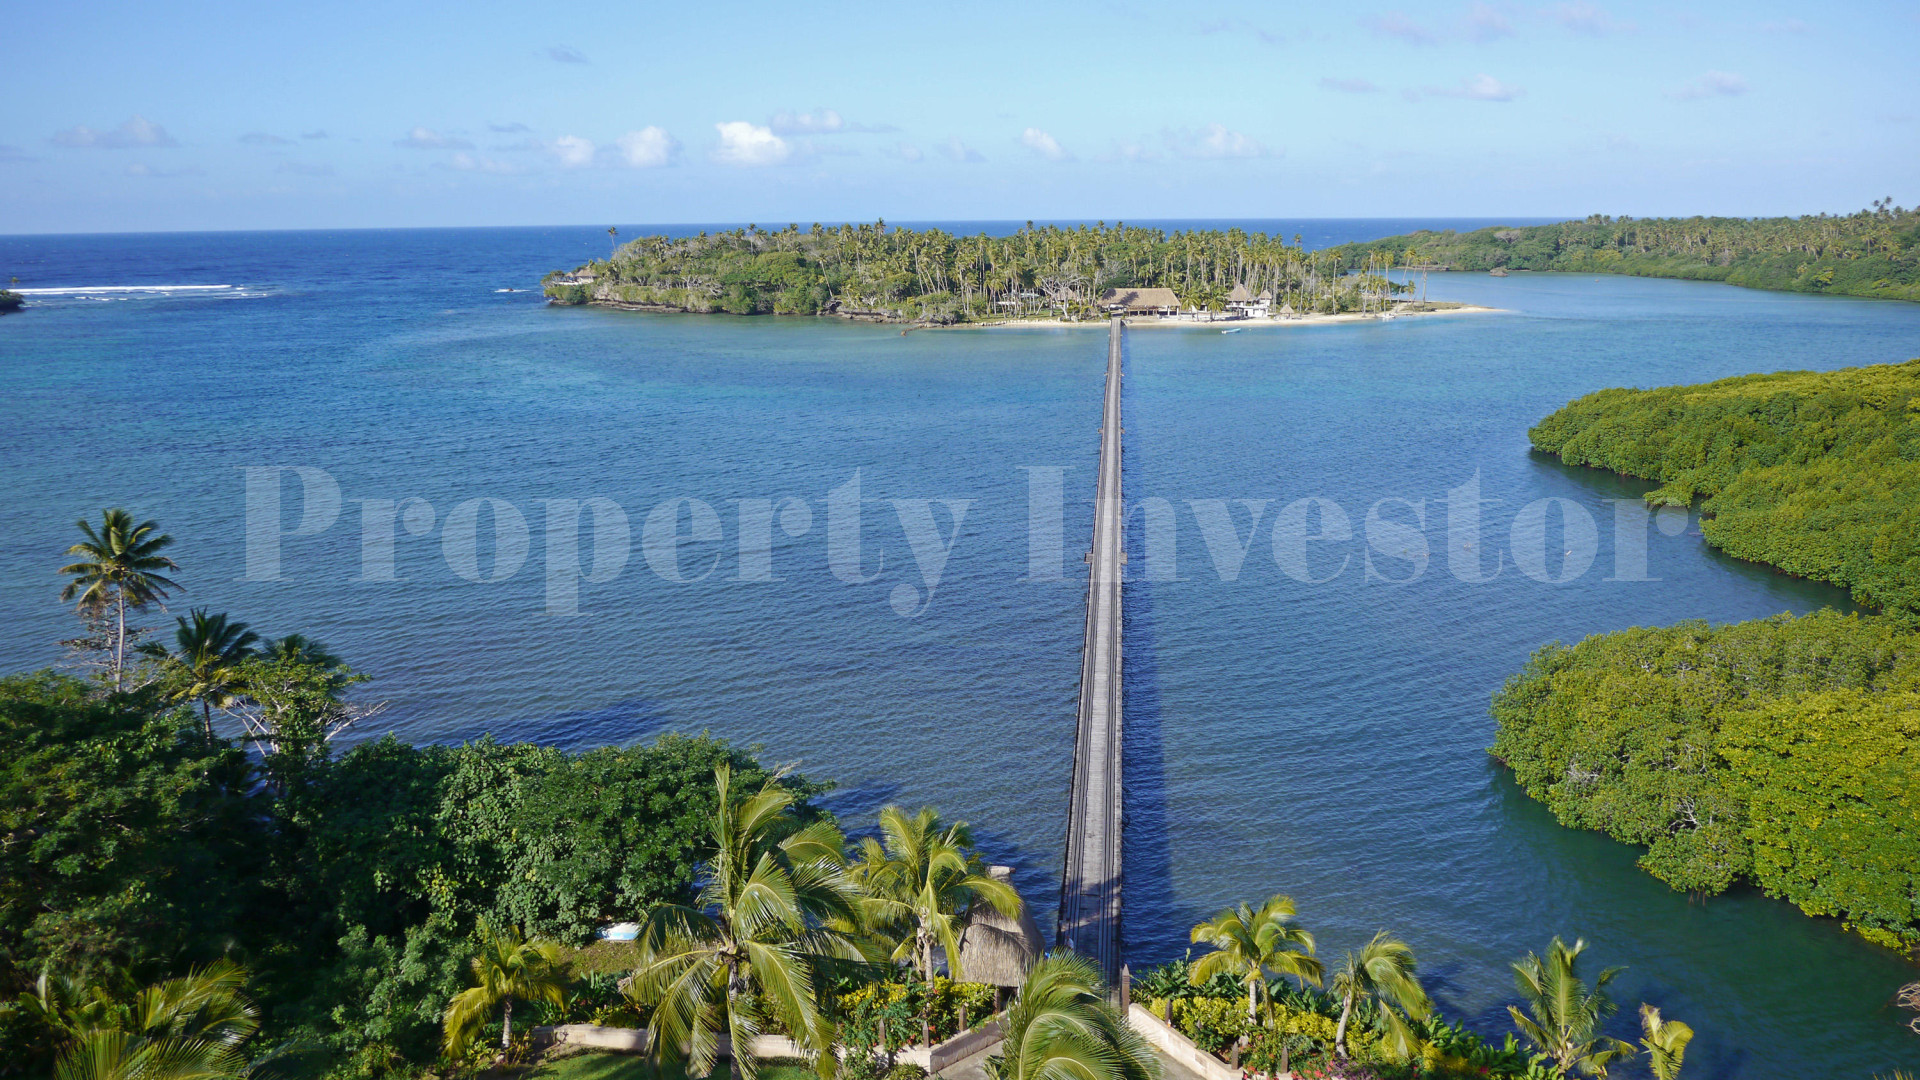 3,367 m² Private Island Freehold Lot for Sale in Vanua Levu, Fiji (Lot 4)